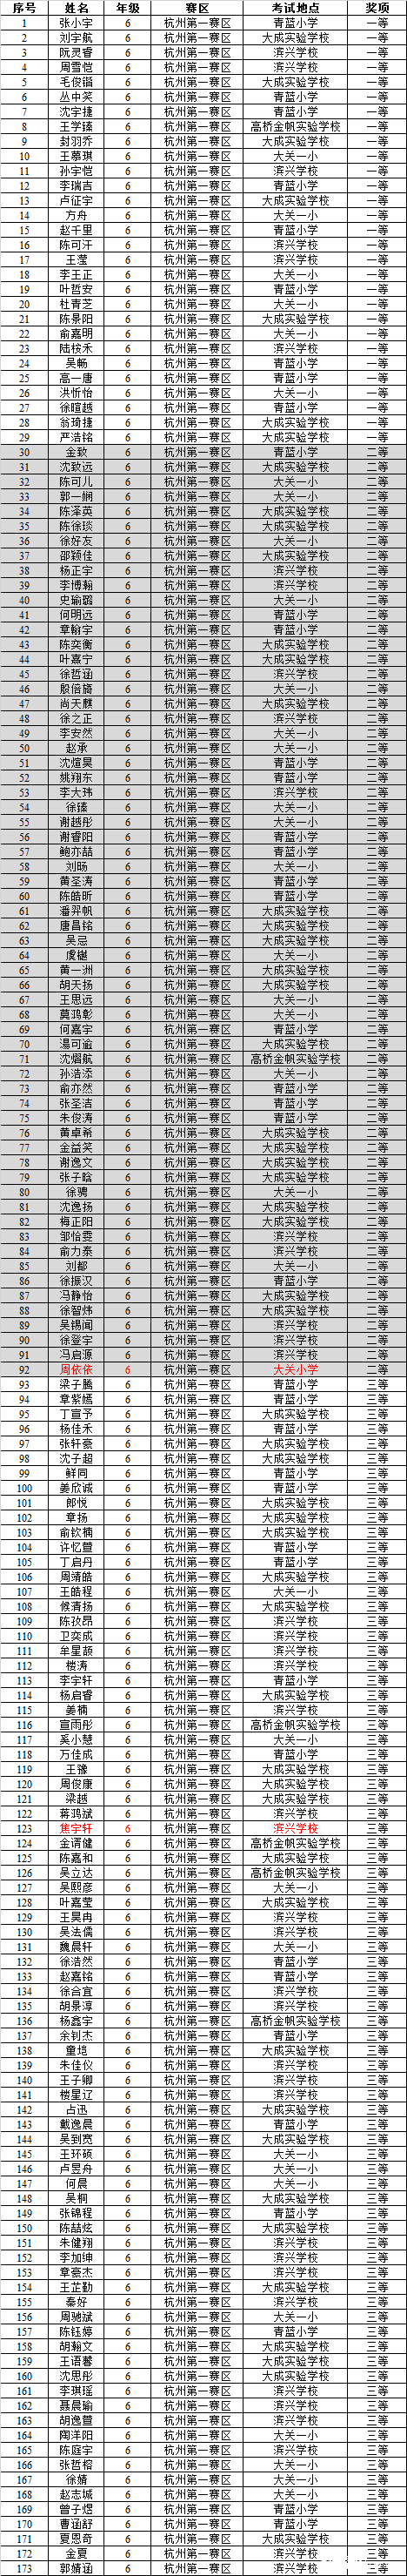 2016第14届走美杯杭州第一赛区六年级获奖名单1